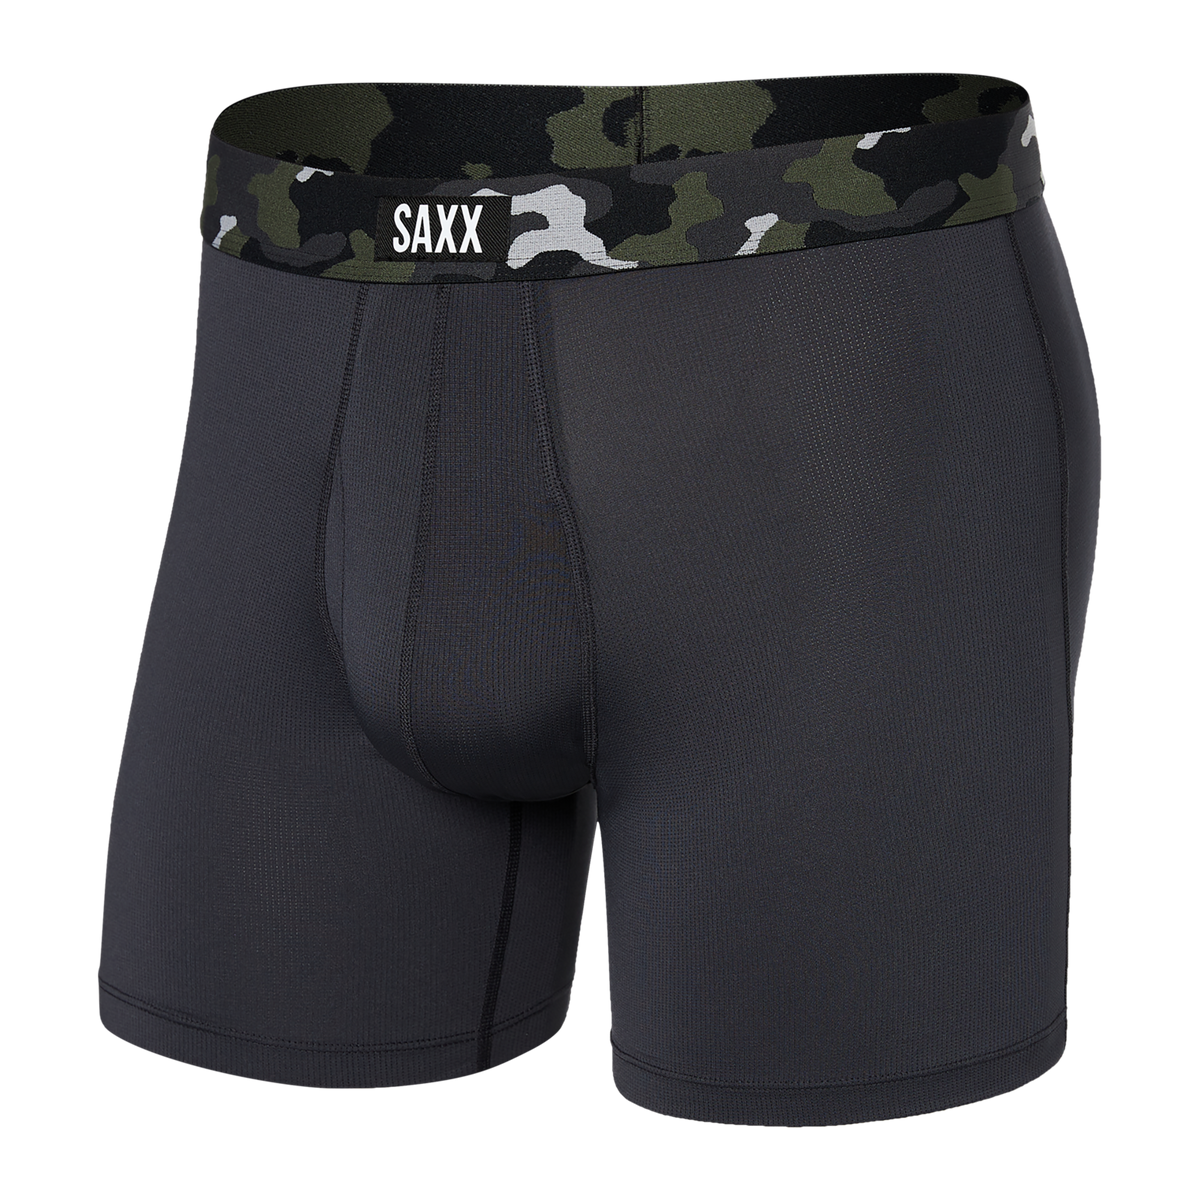 Saxx Underwear Sports Mesh 1 Pack Boxer Briefs - Faded Black Camo ...